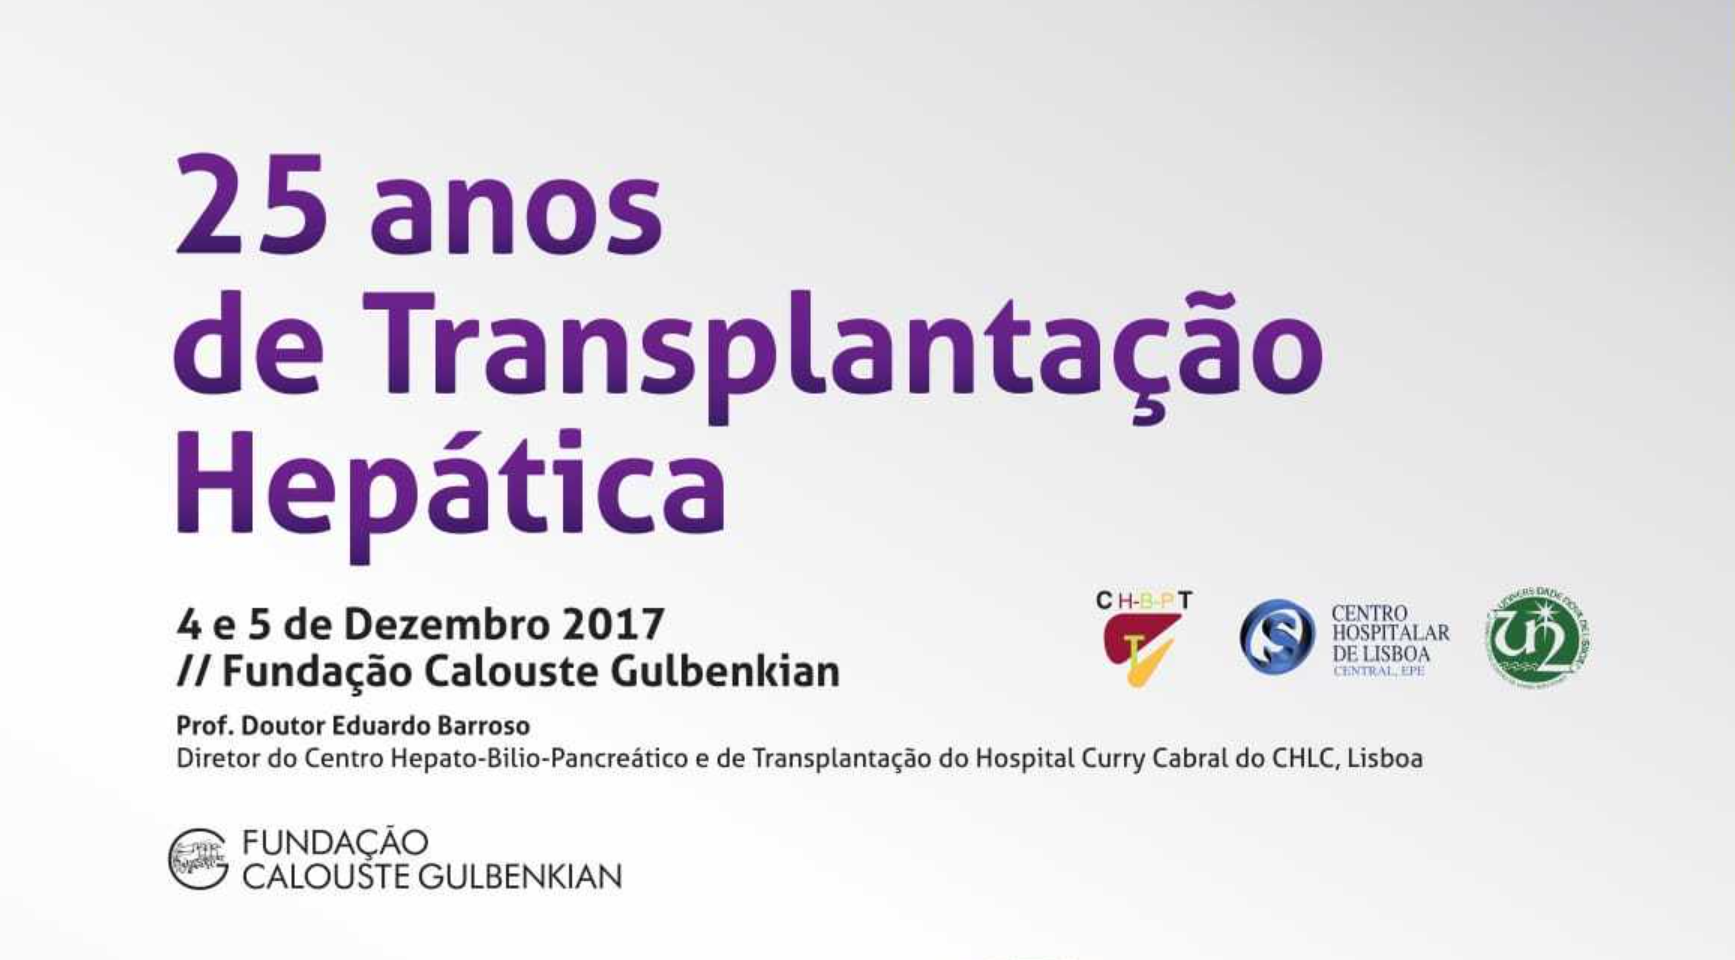 25 anos de Transplantação Hepática – Centro Hepatobiliopancreático e de Transplantação (CHBPT) do Hospital de Curry Cabral